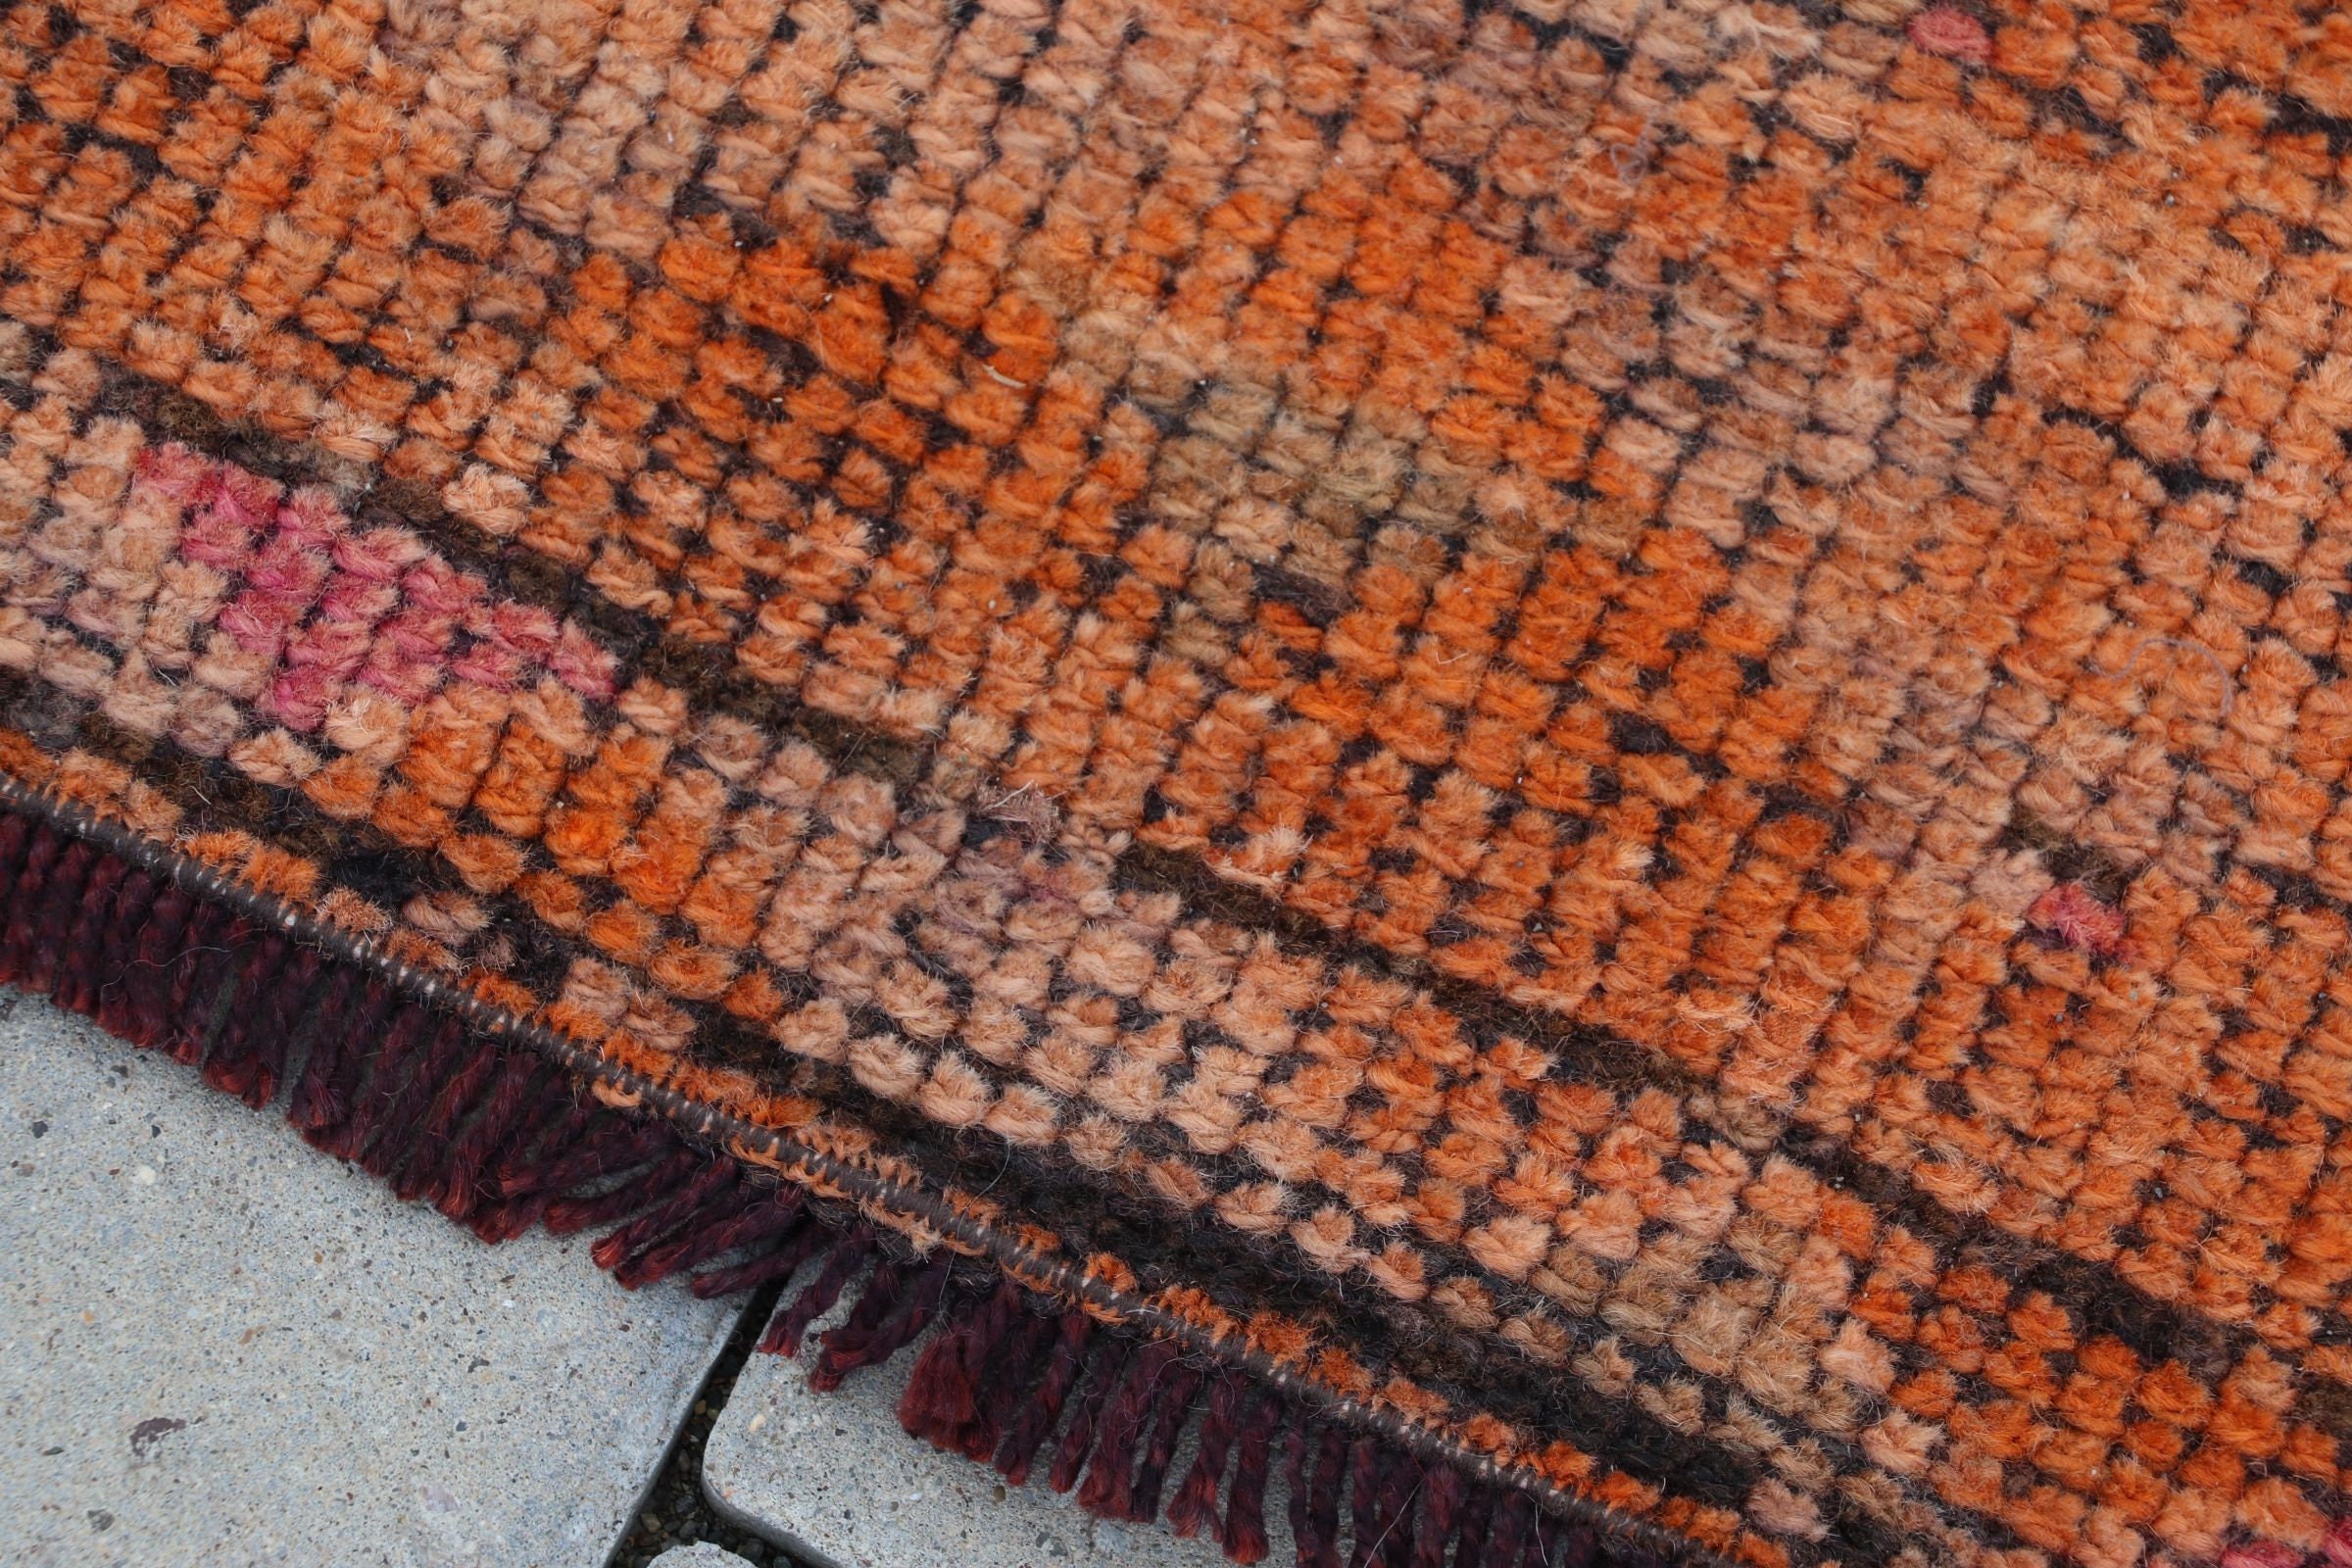 Orange Antique Rug, Handmade Rugs, Rugs for Corridor, Vintage Rug, Wool Rug, Floor Rug, Hallway Rugs, 2.7x11.3 ft Runner Rug, Turkish Rug